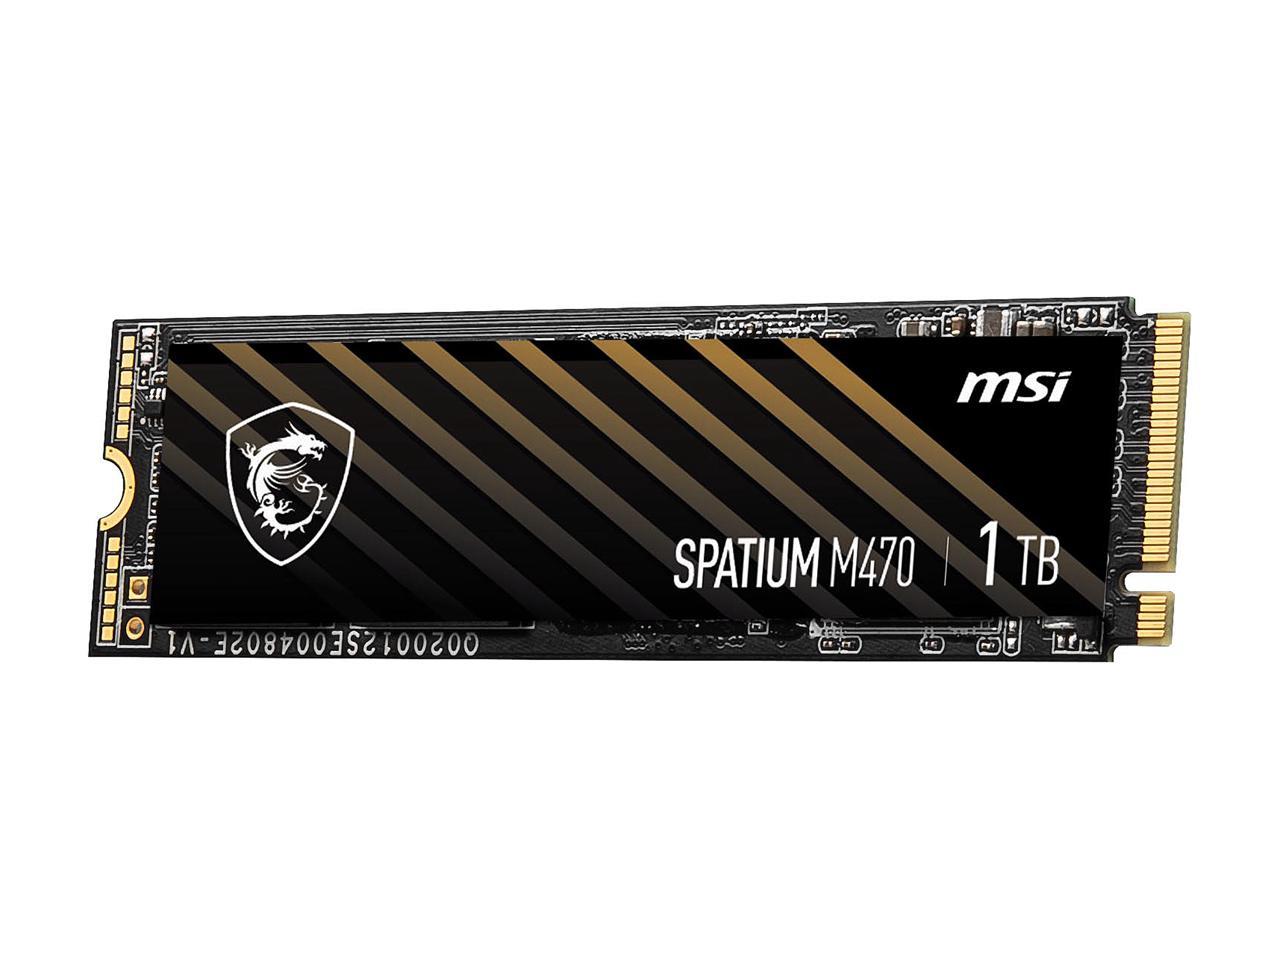 1TB MSI Spatium M470 Spatium SSD @Newegg (BF/AR) $75